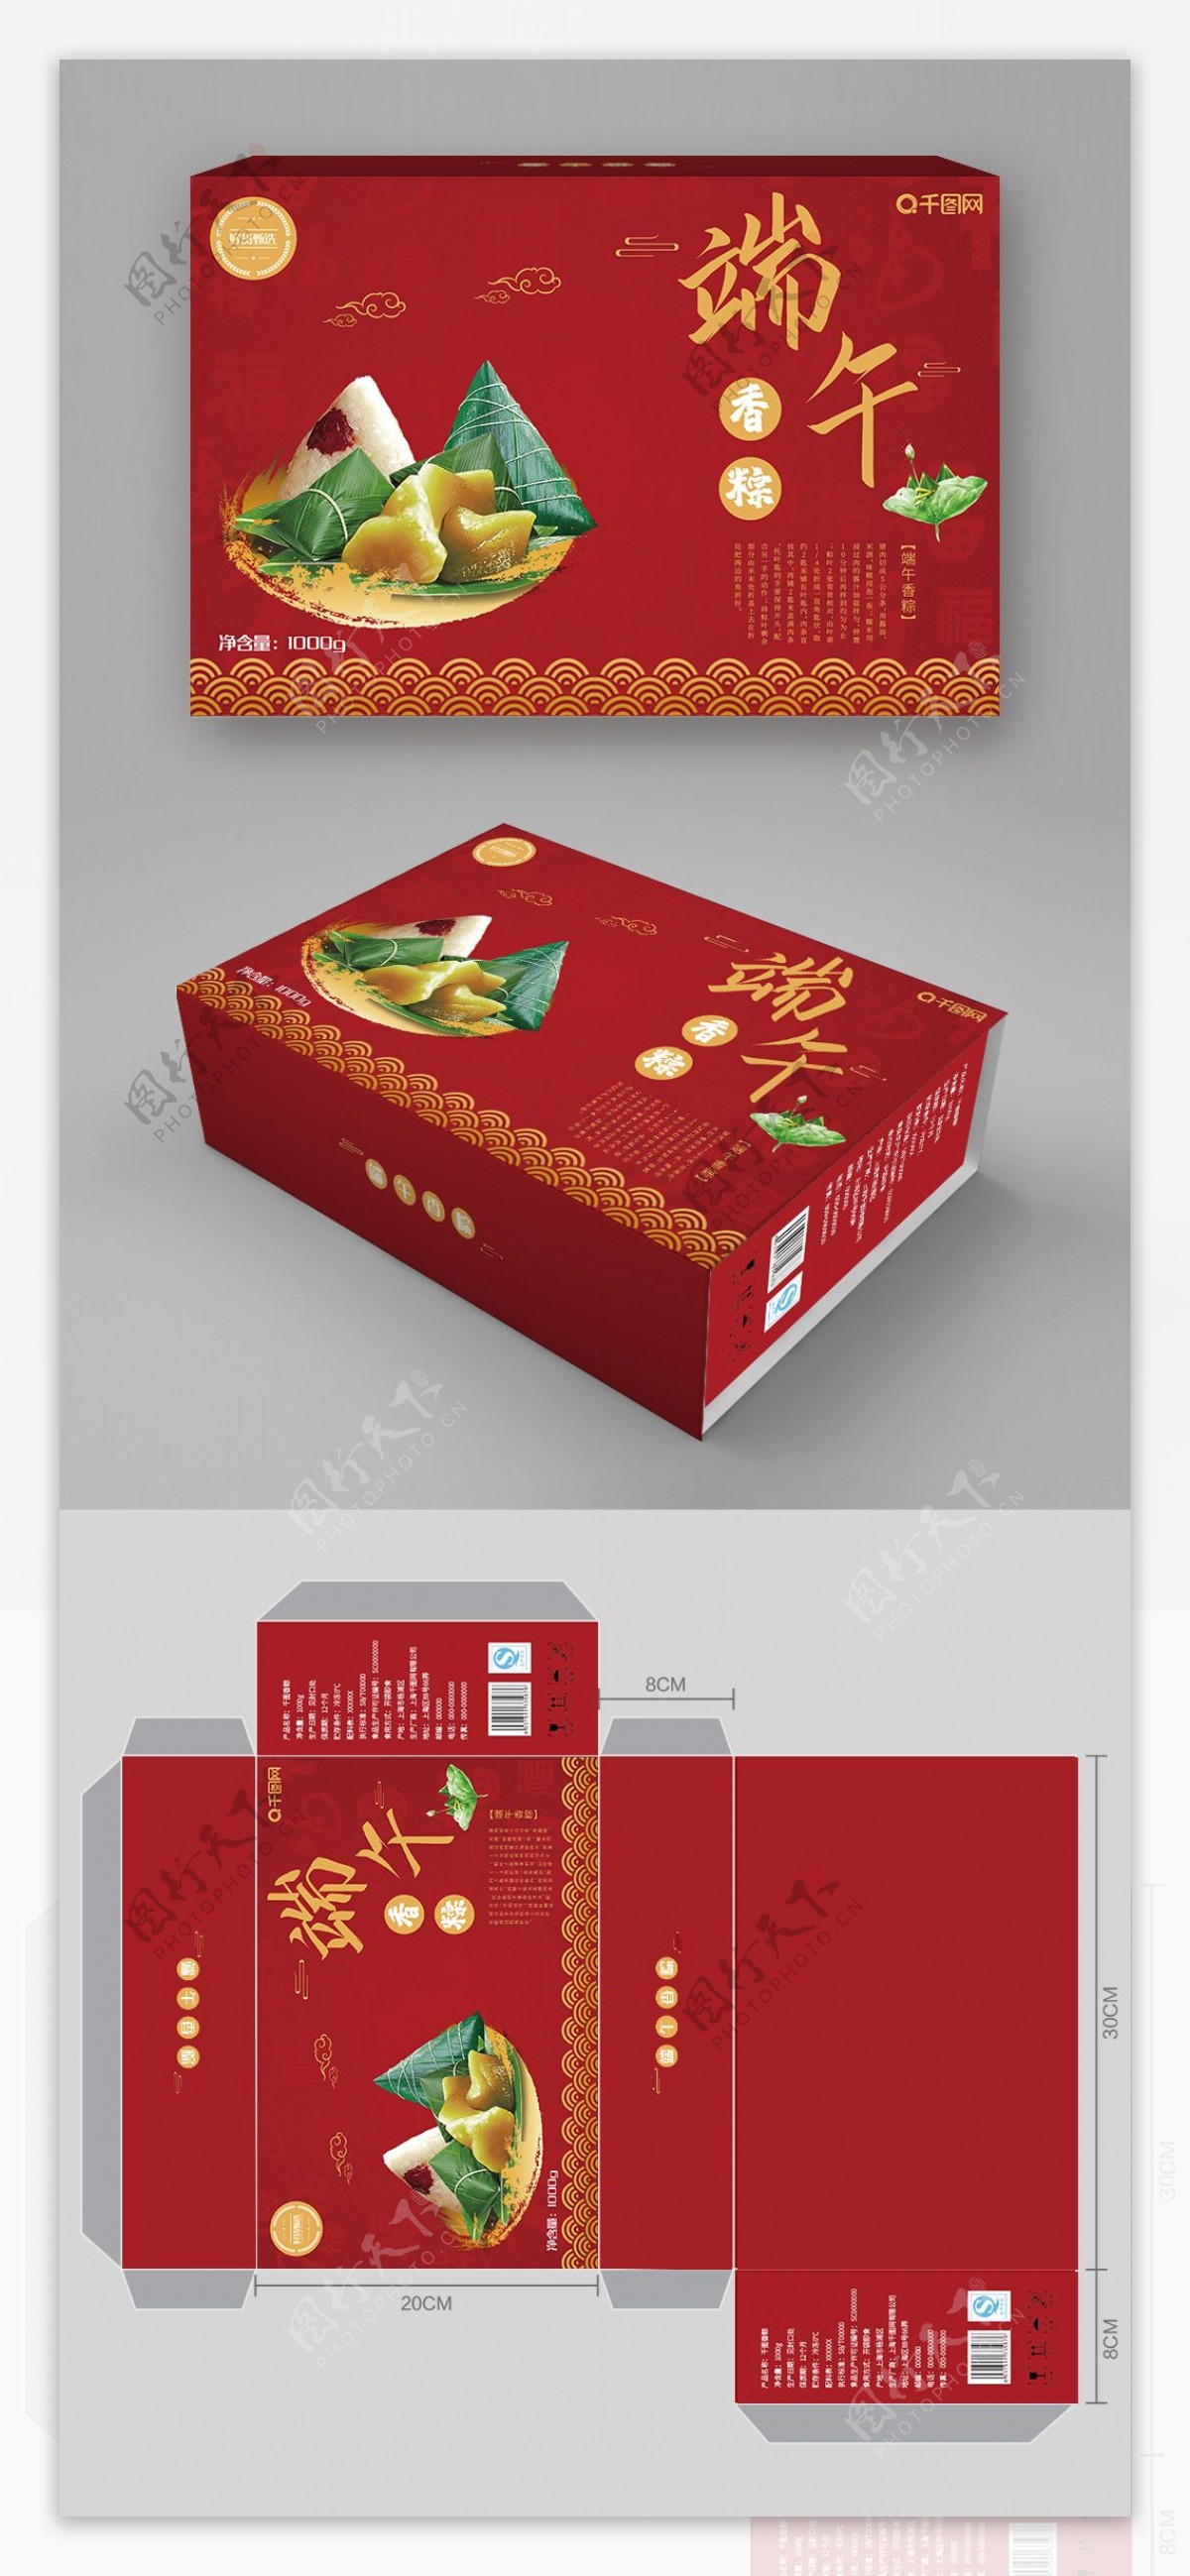 原创红色高端中国风端午节粽子礼盒包装设计